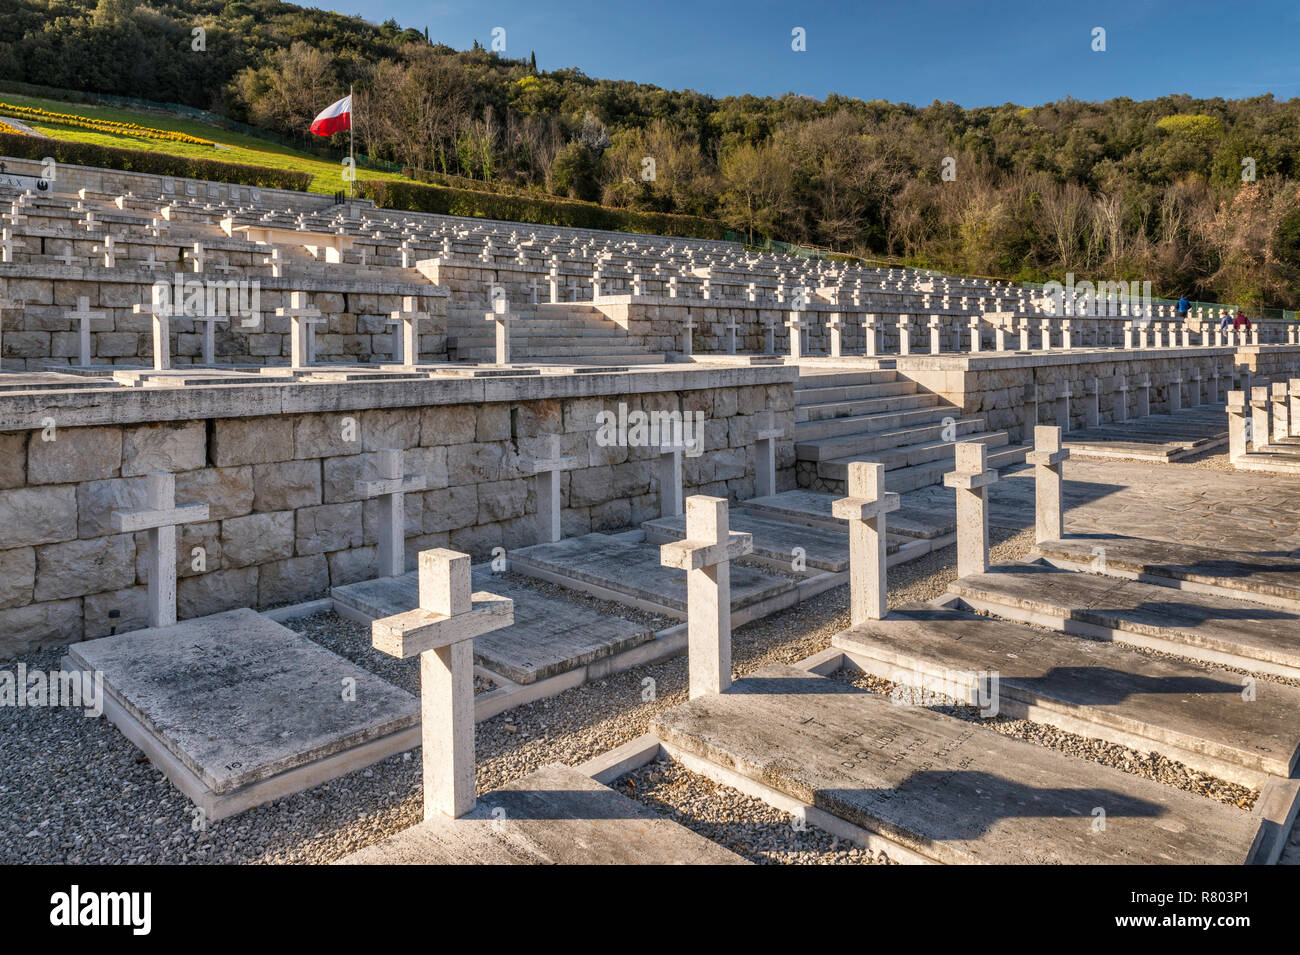 Au cimetière de guerre polonaise tombes près de l'abbaye de Monte Cassino, lazio, Italie Banque D'Images